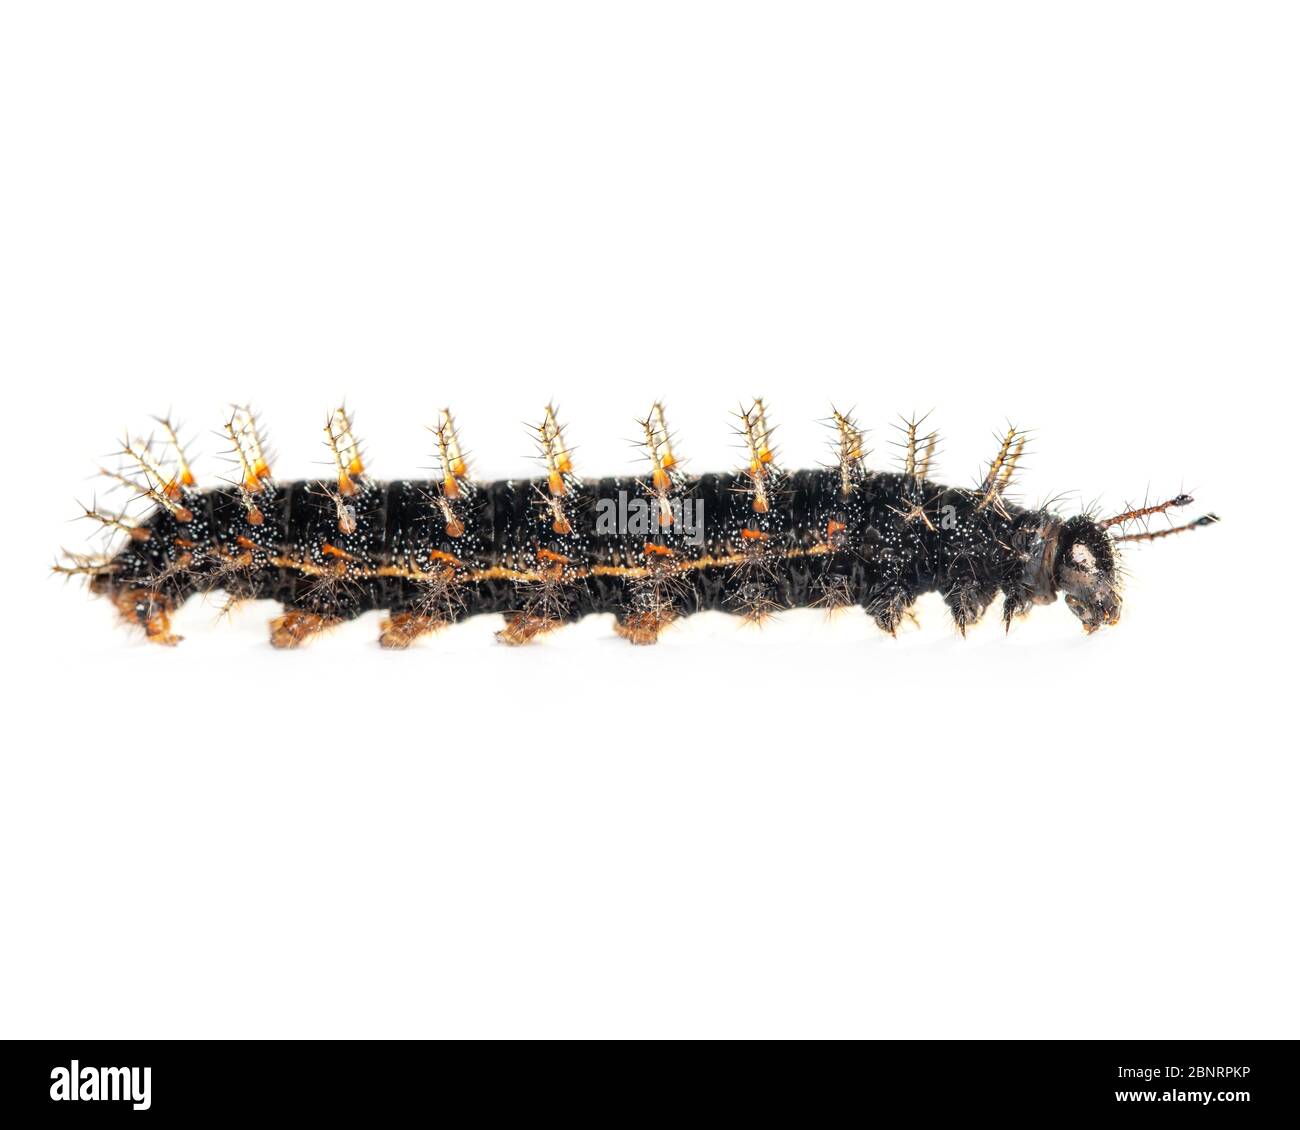 Black Orange And Yellow Worm Caterpillars Animals Isolate On White Background Imagem Stock Photo Alamy